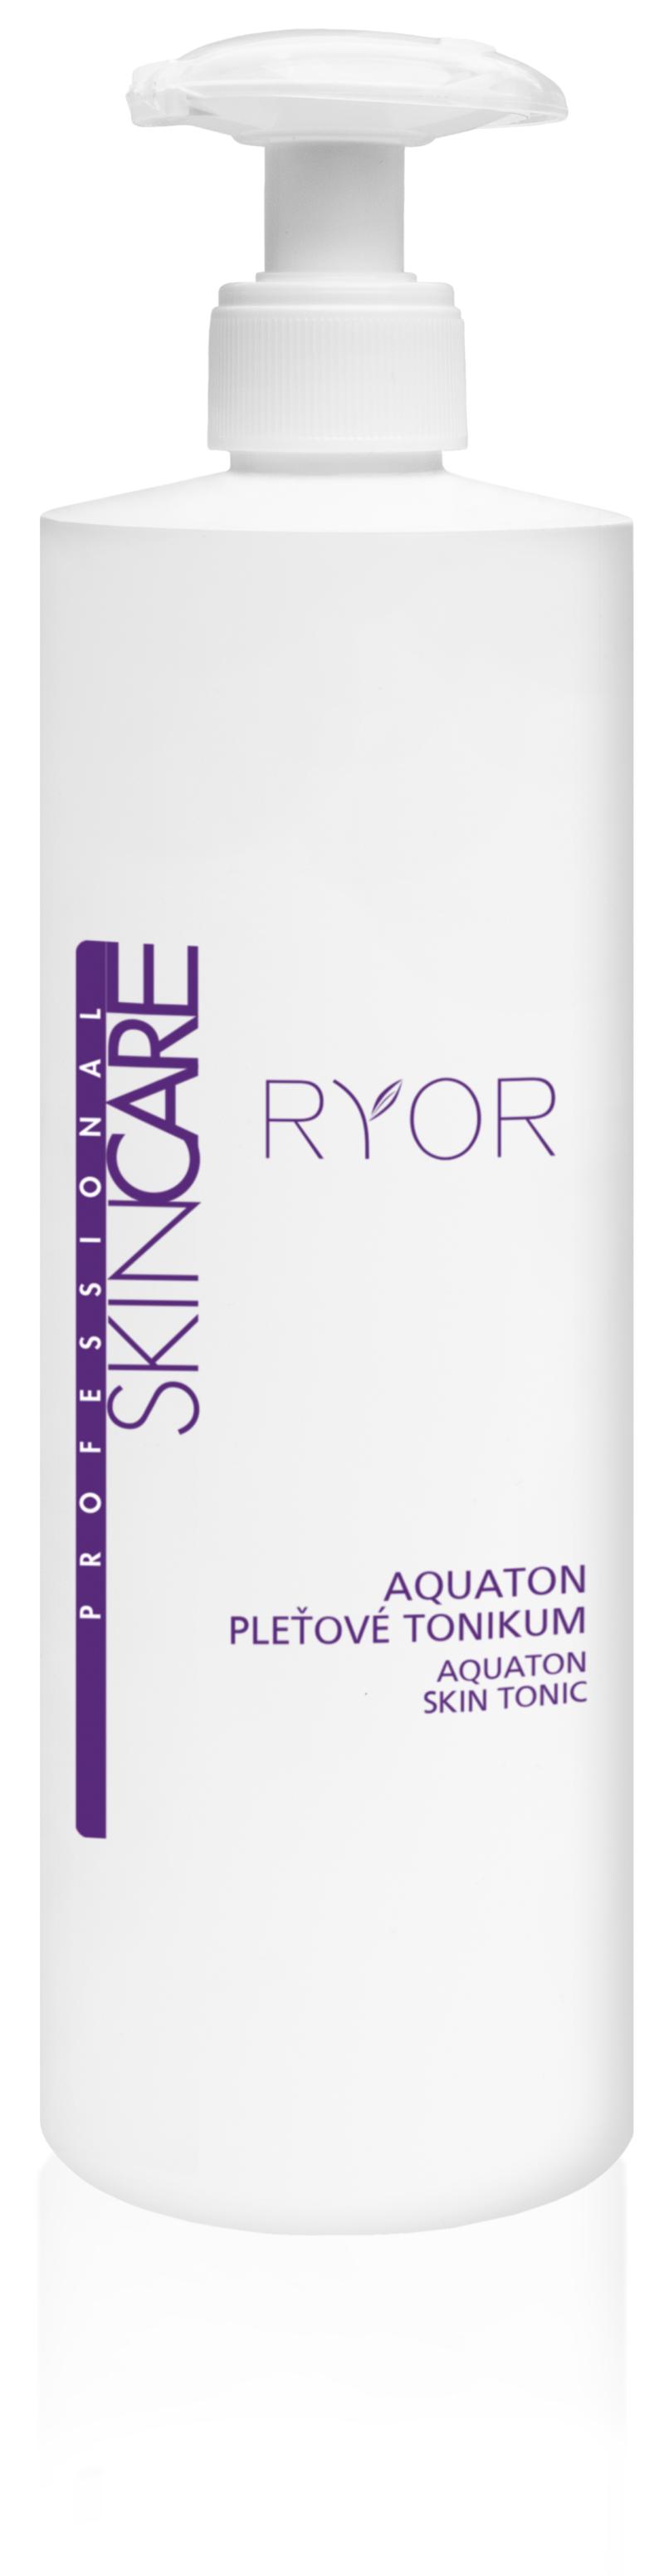 Ryor - Aquaton - pleťové tonikum (Profesionálne prípravky určené na maloobchodný predaj.)